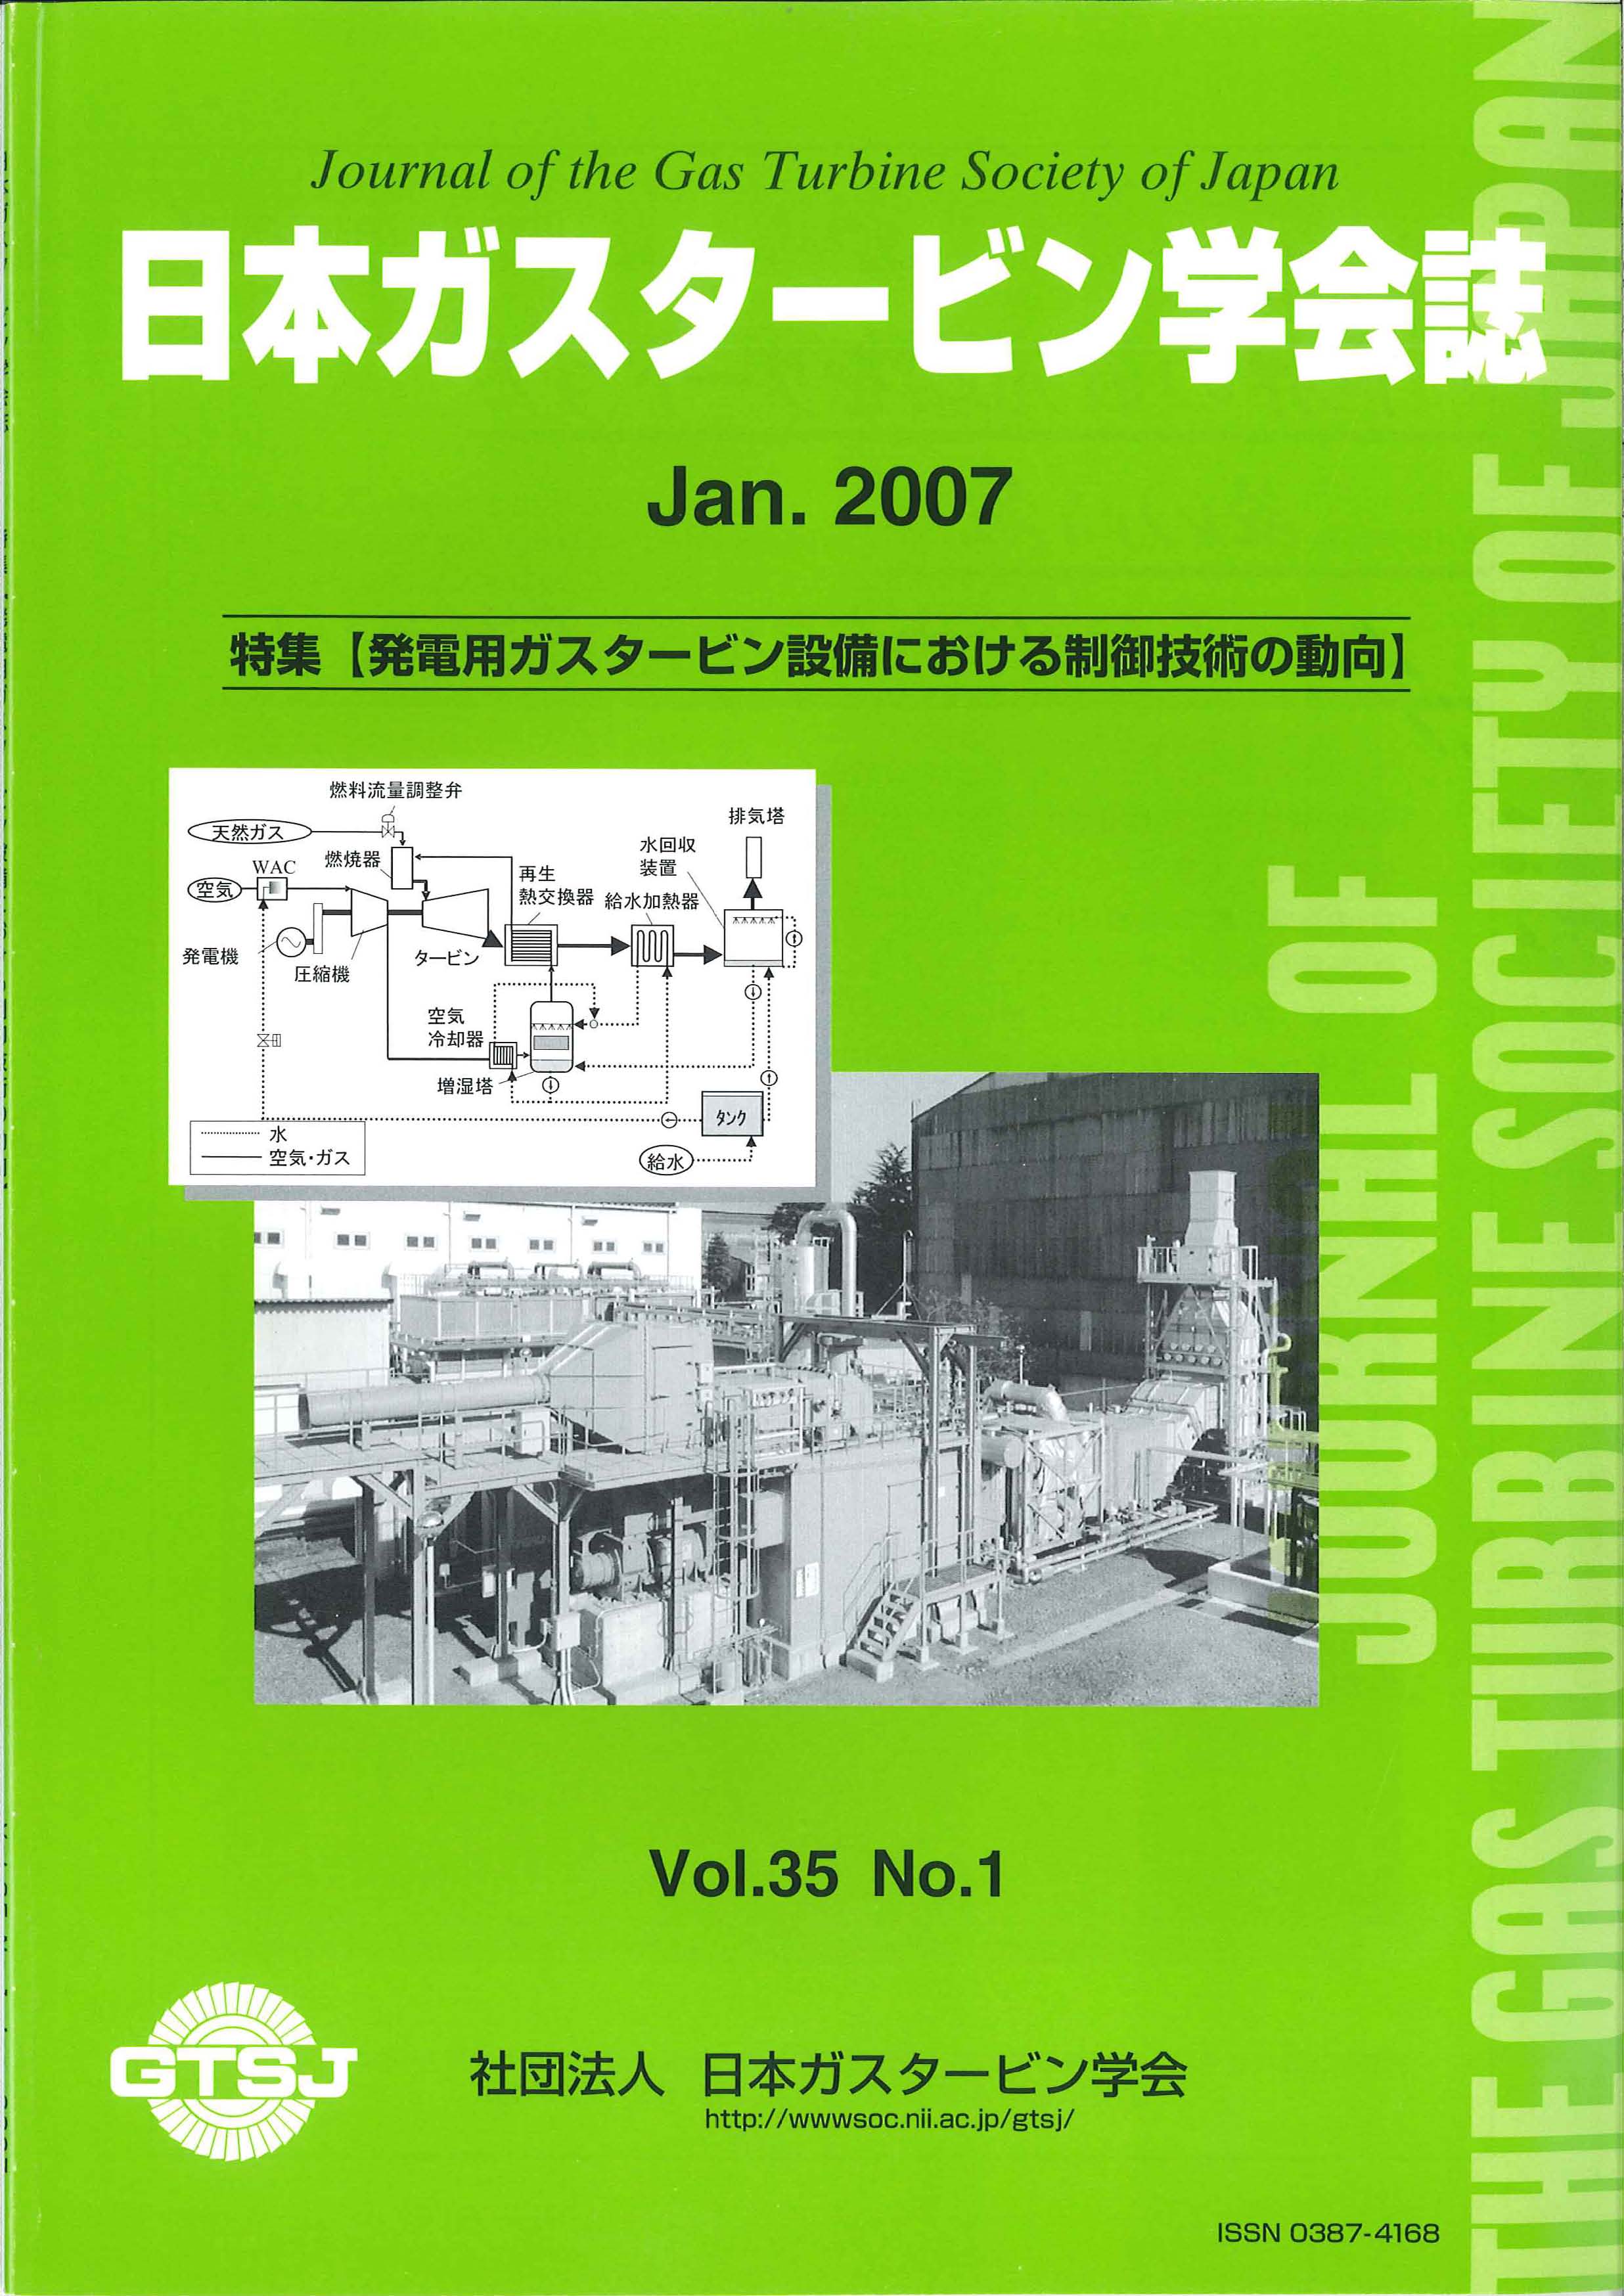 日本ガスタービン学会誌 Vol.35 No.1 2007年1月 表紙画像